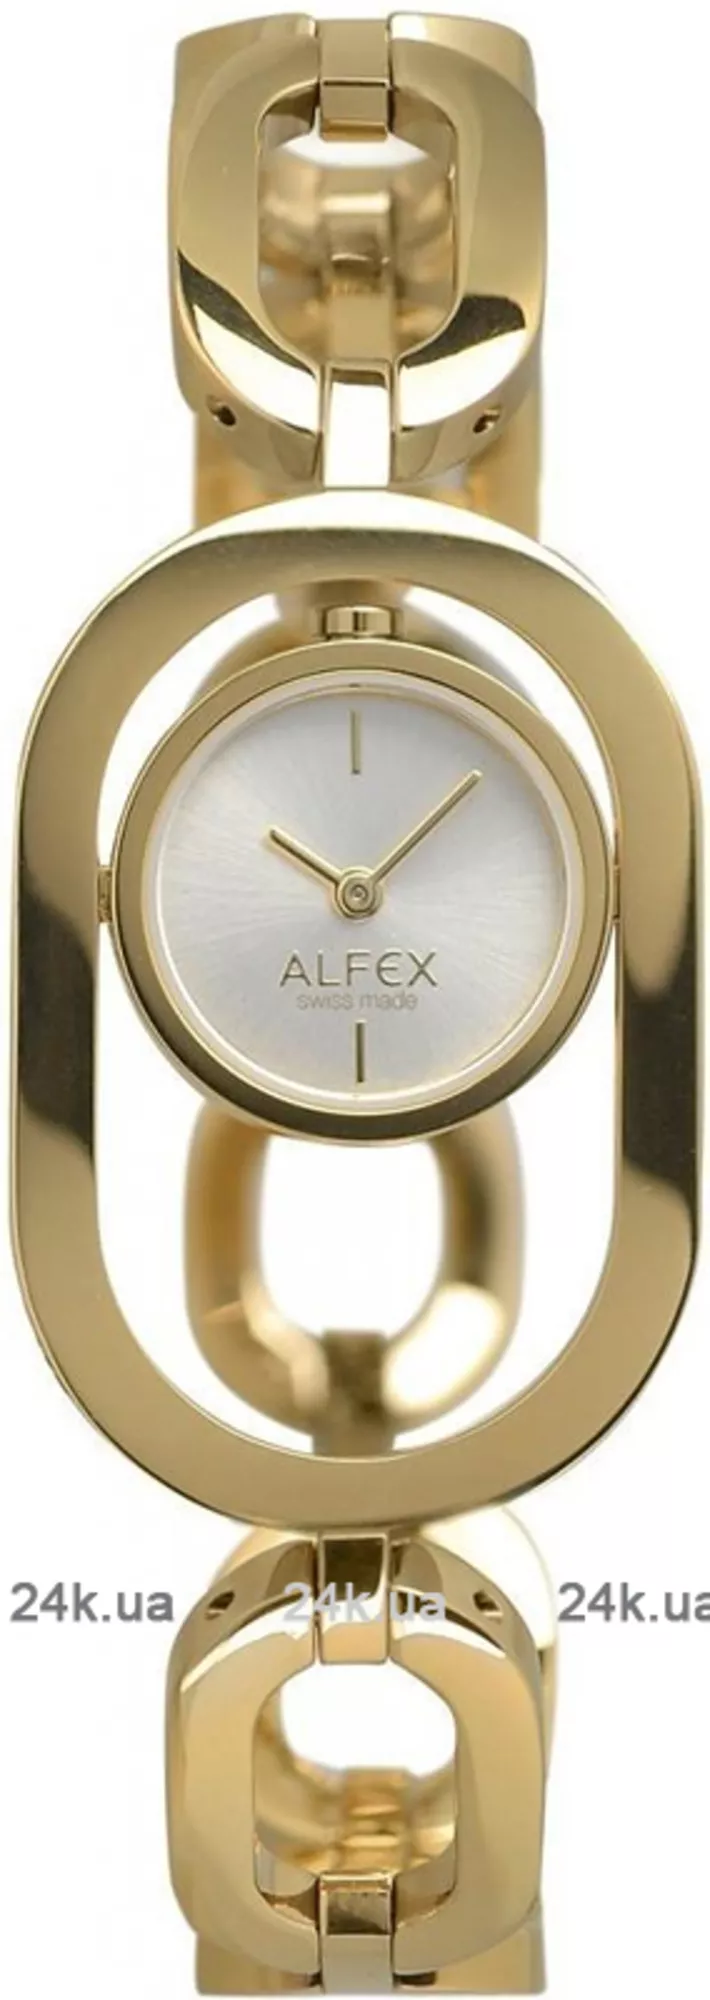 Часы Alfex 5722/021